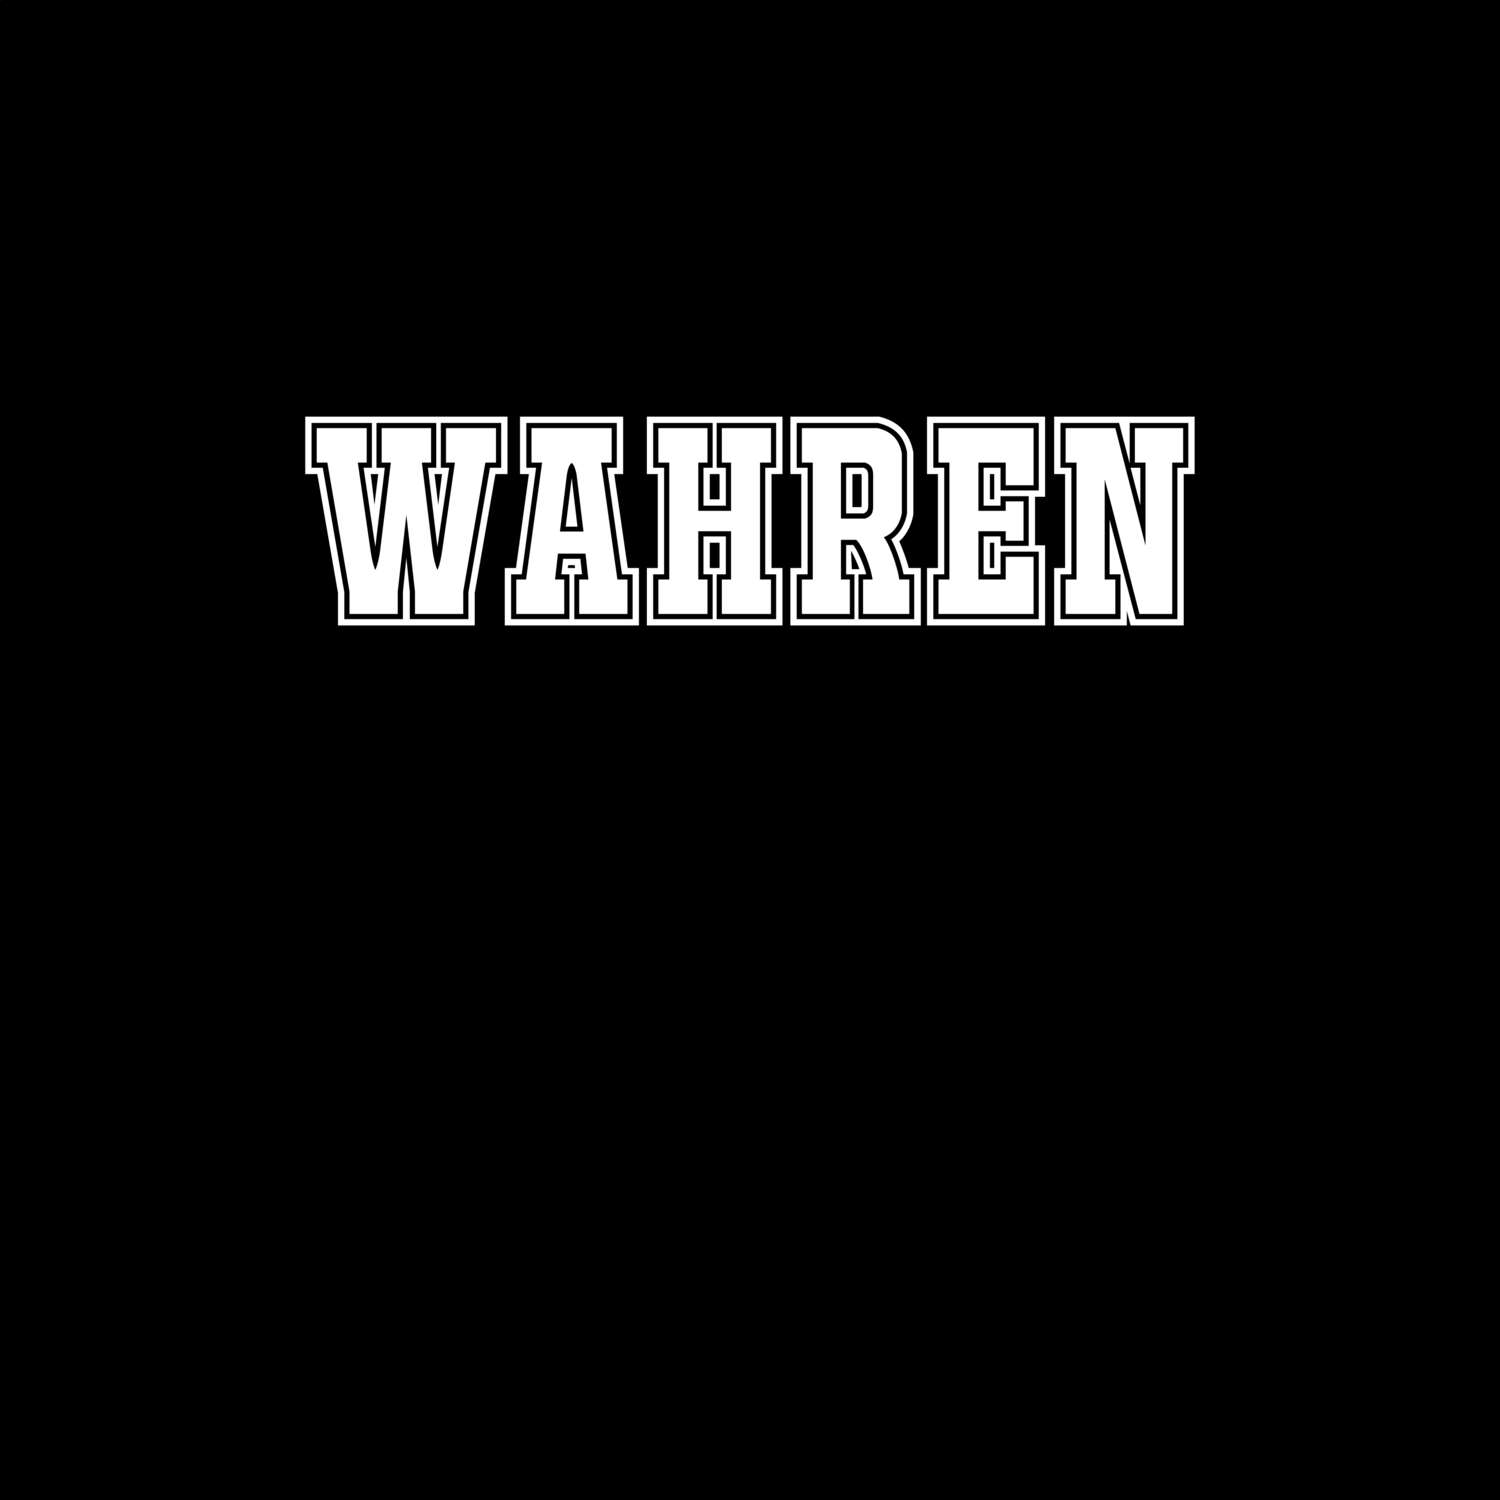 Wahren T-Shirt »Classic«